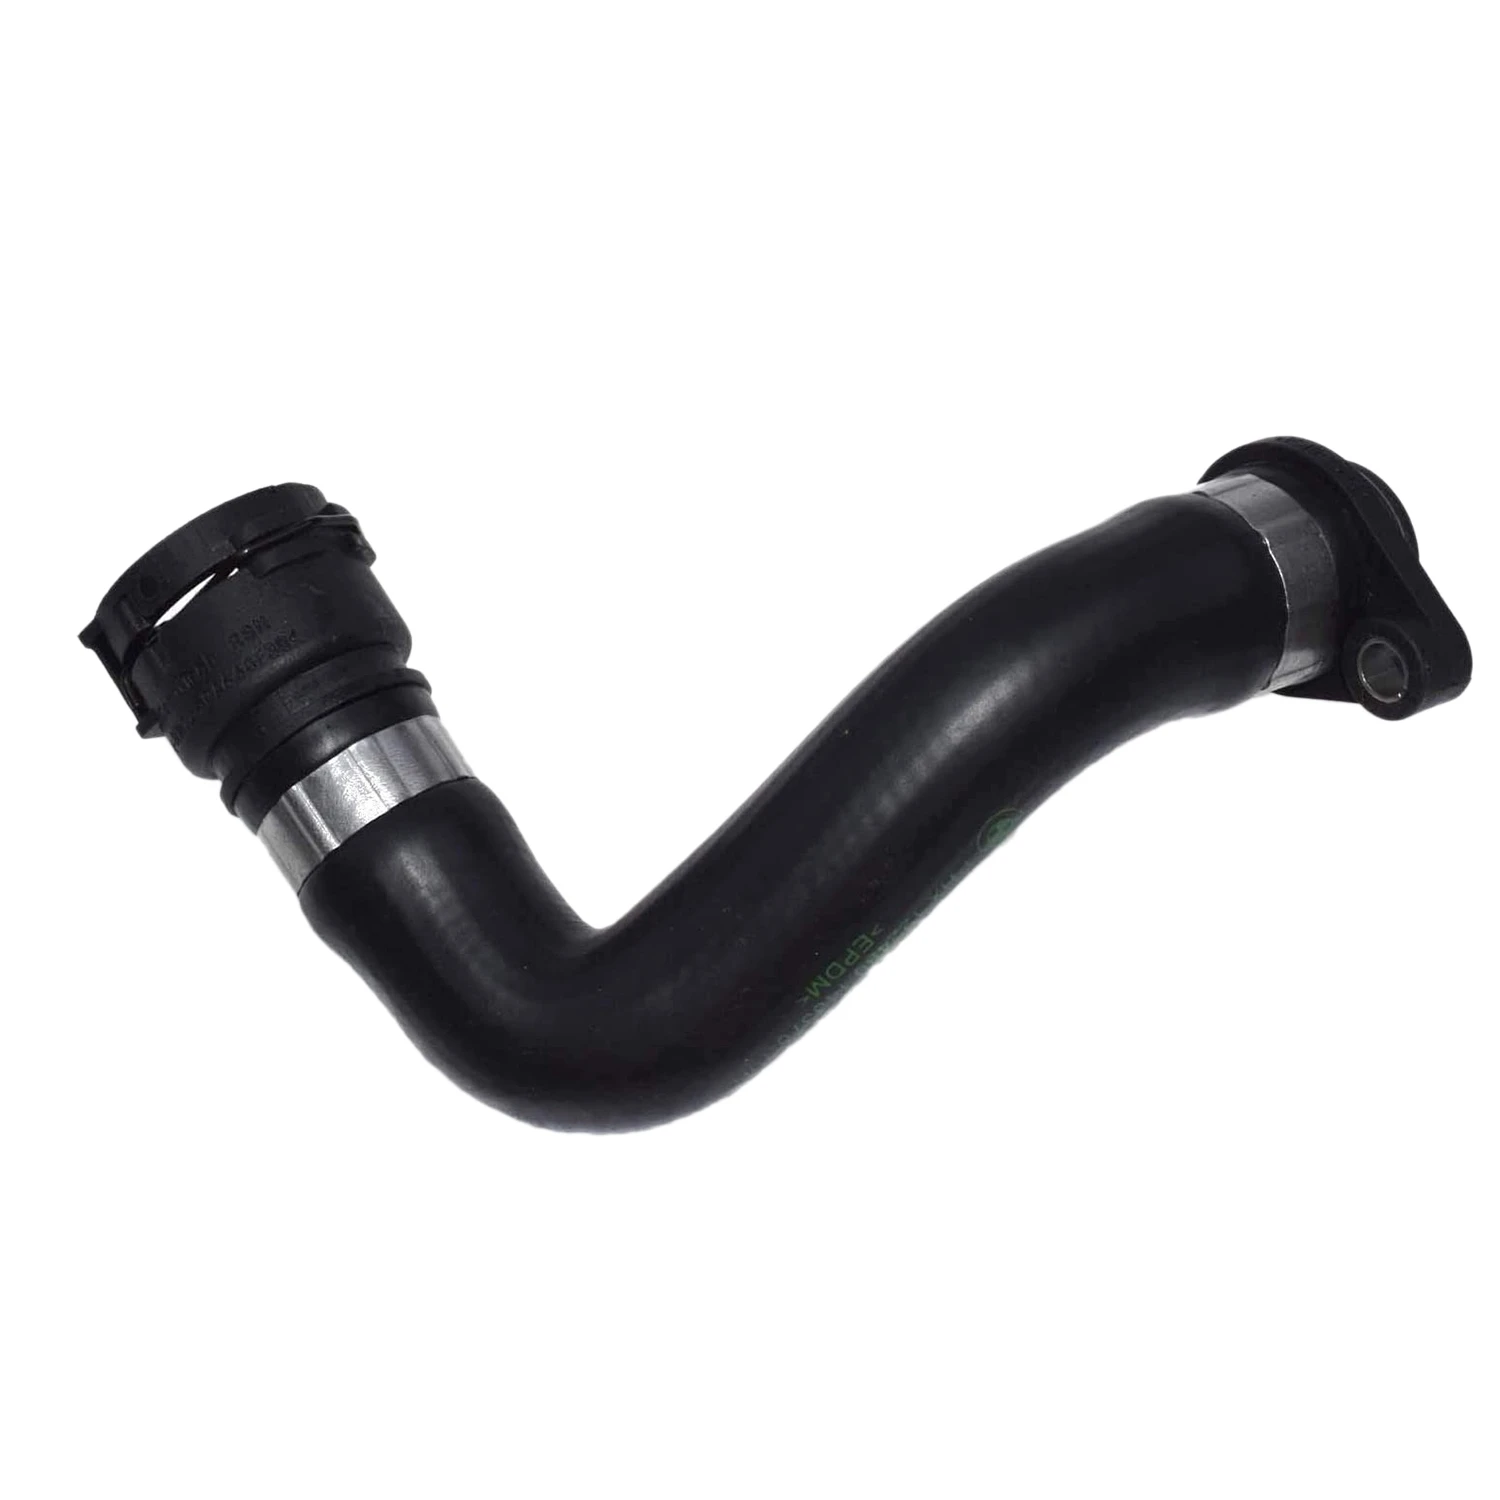 

Car Cooling System Water Hose Pipe for -BMW E46 E81 E83 E87 E88 E90 X3 11537572158